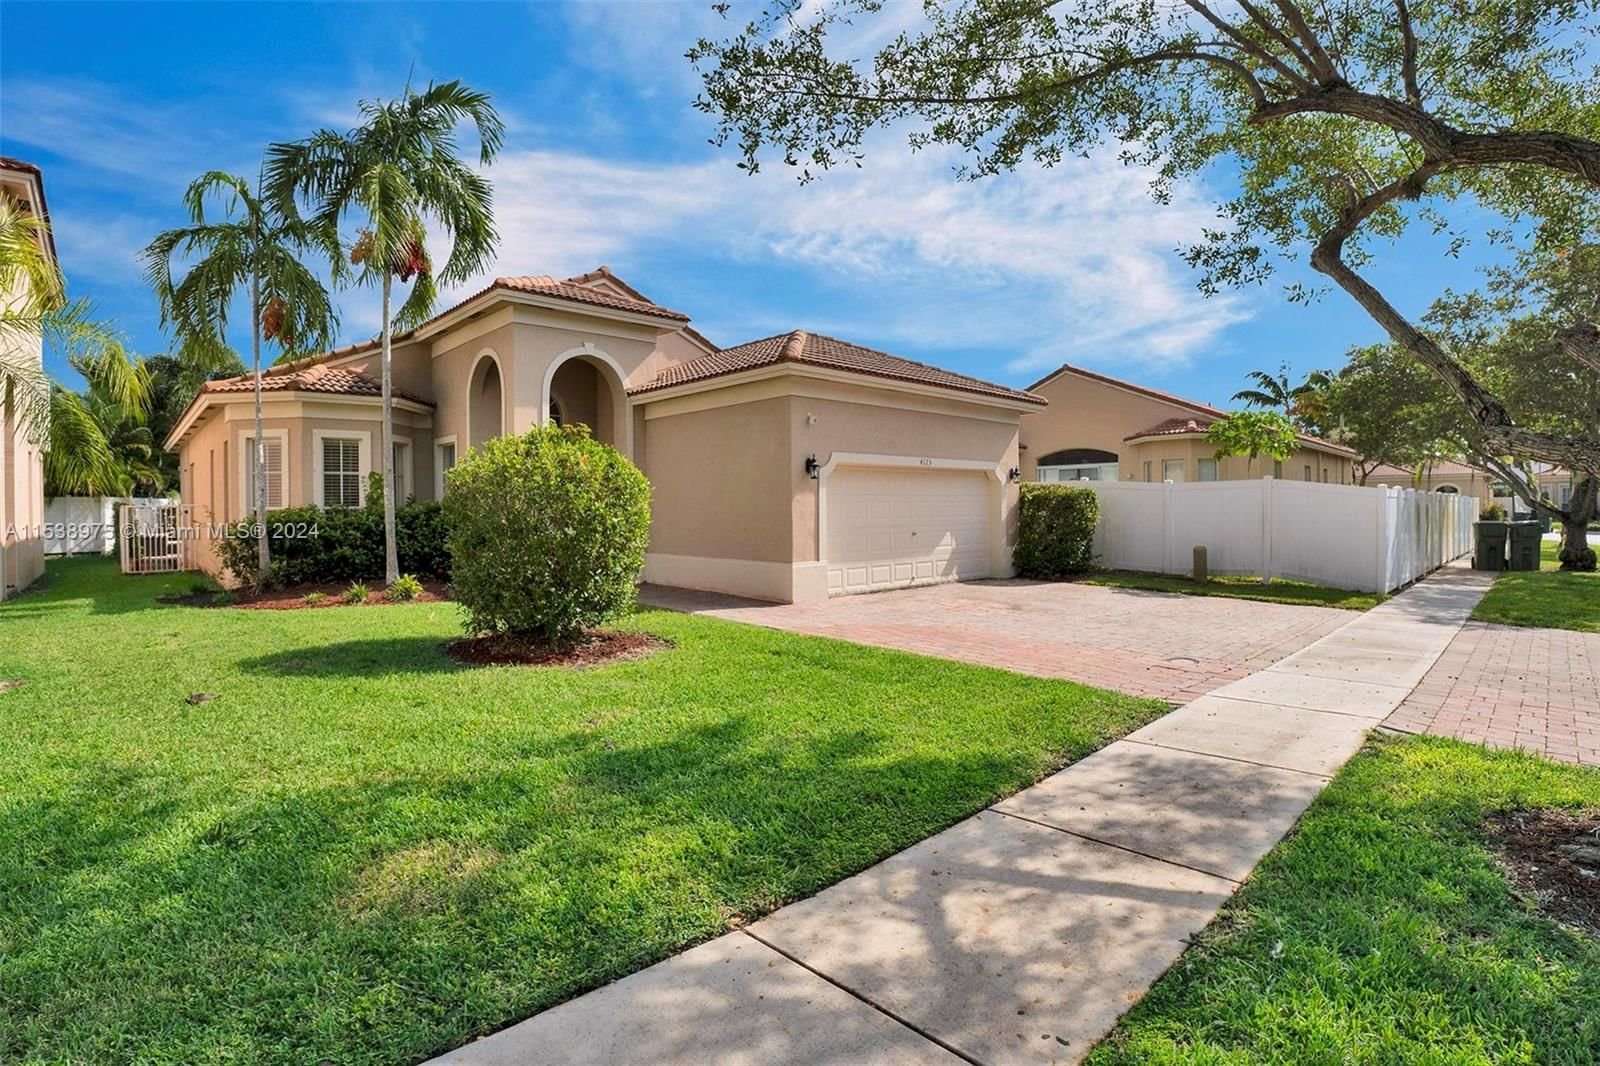 Real estate property located at 4123 22nd St, Miami-Dade County, PORTOFINO ESTATES, Homestead, FL